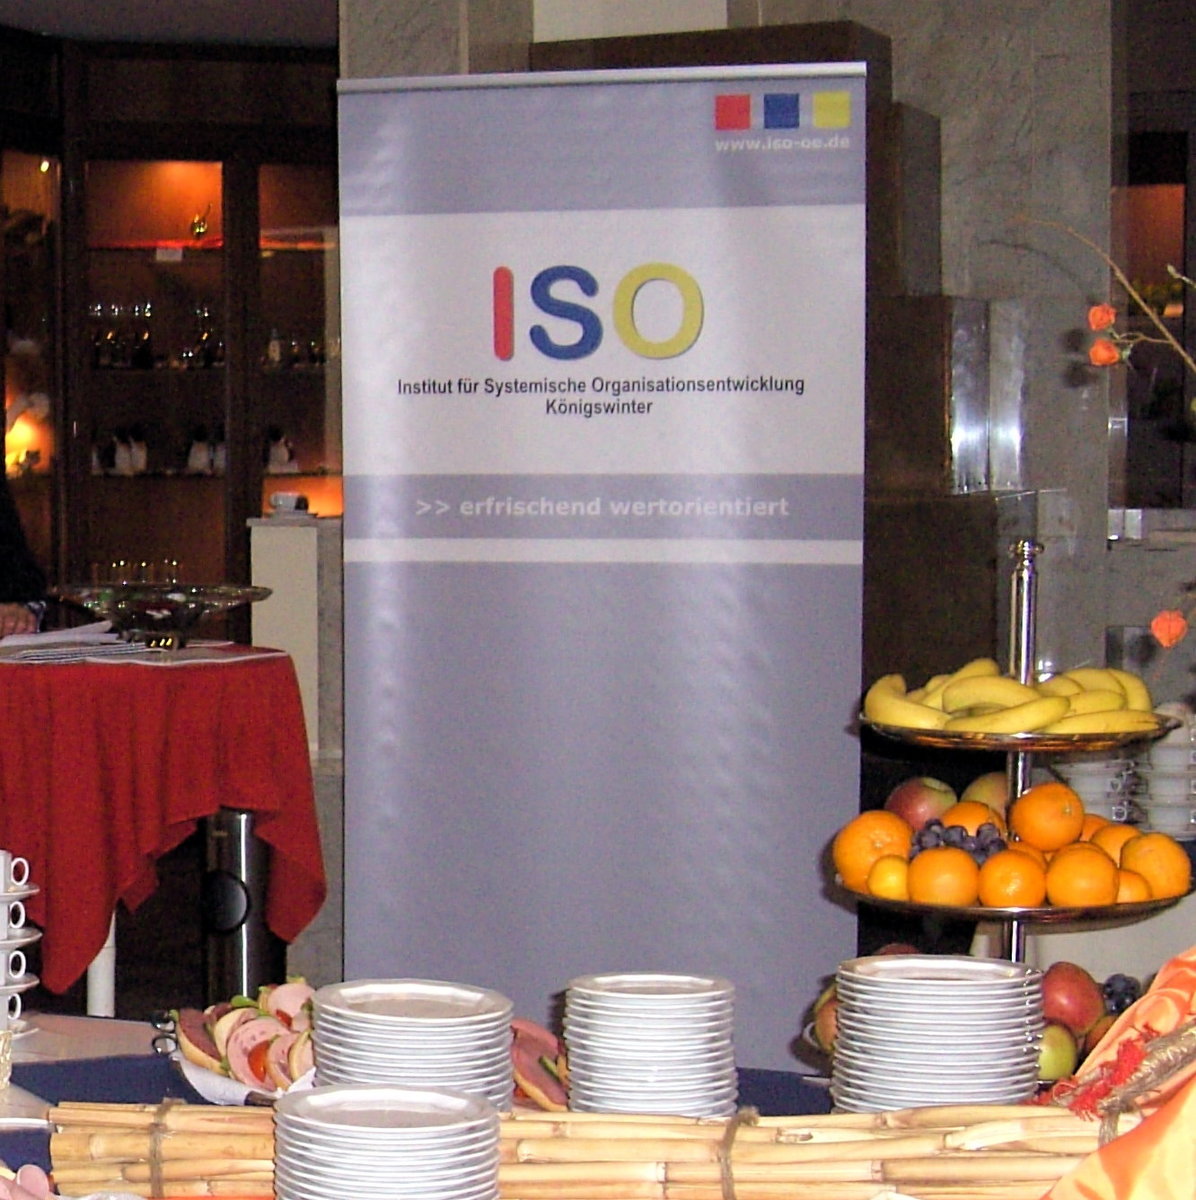 ISO Institut für Systemische Organisationsentwicklung